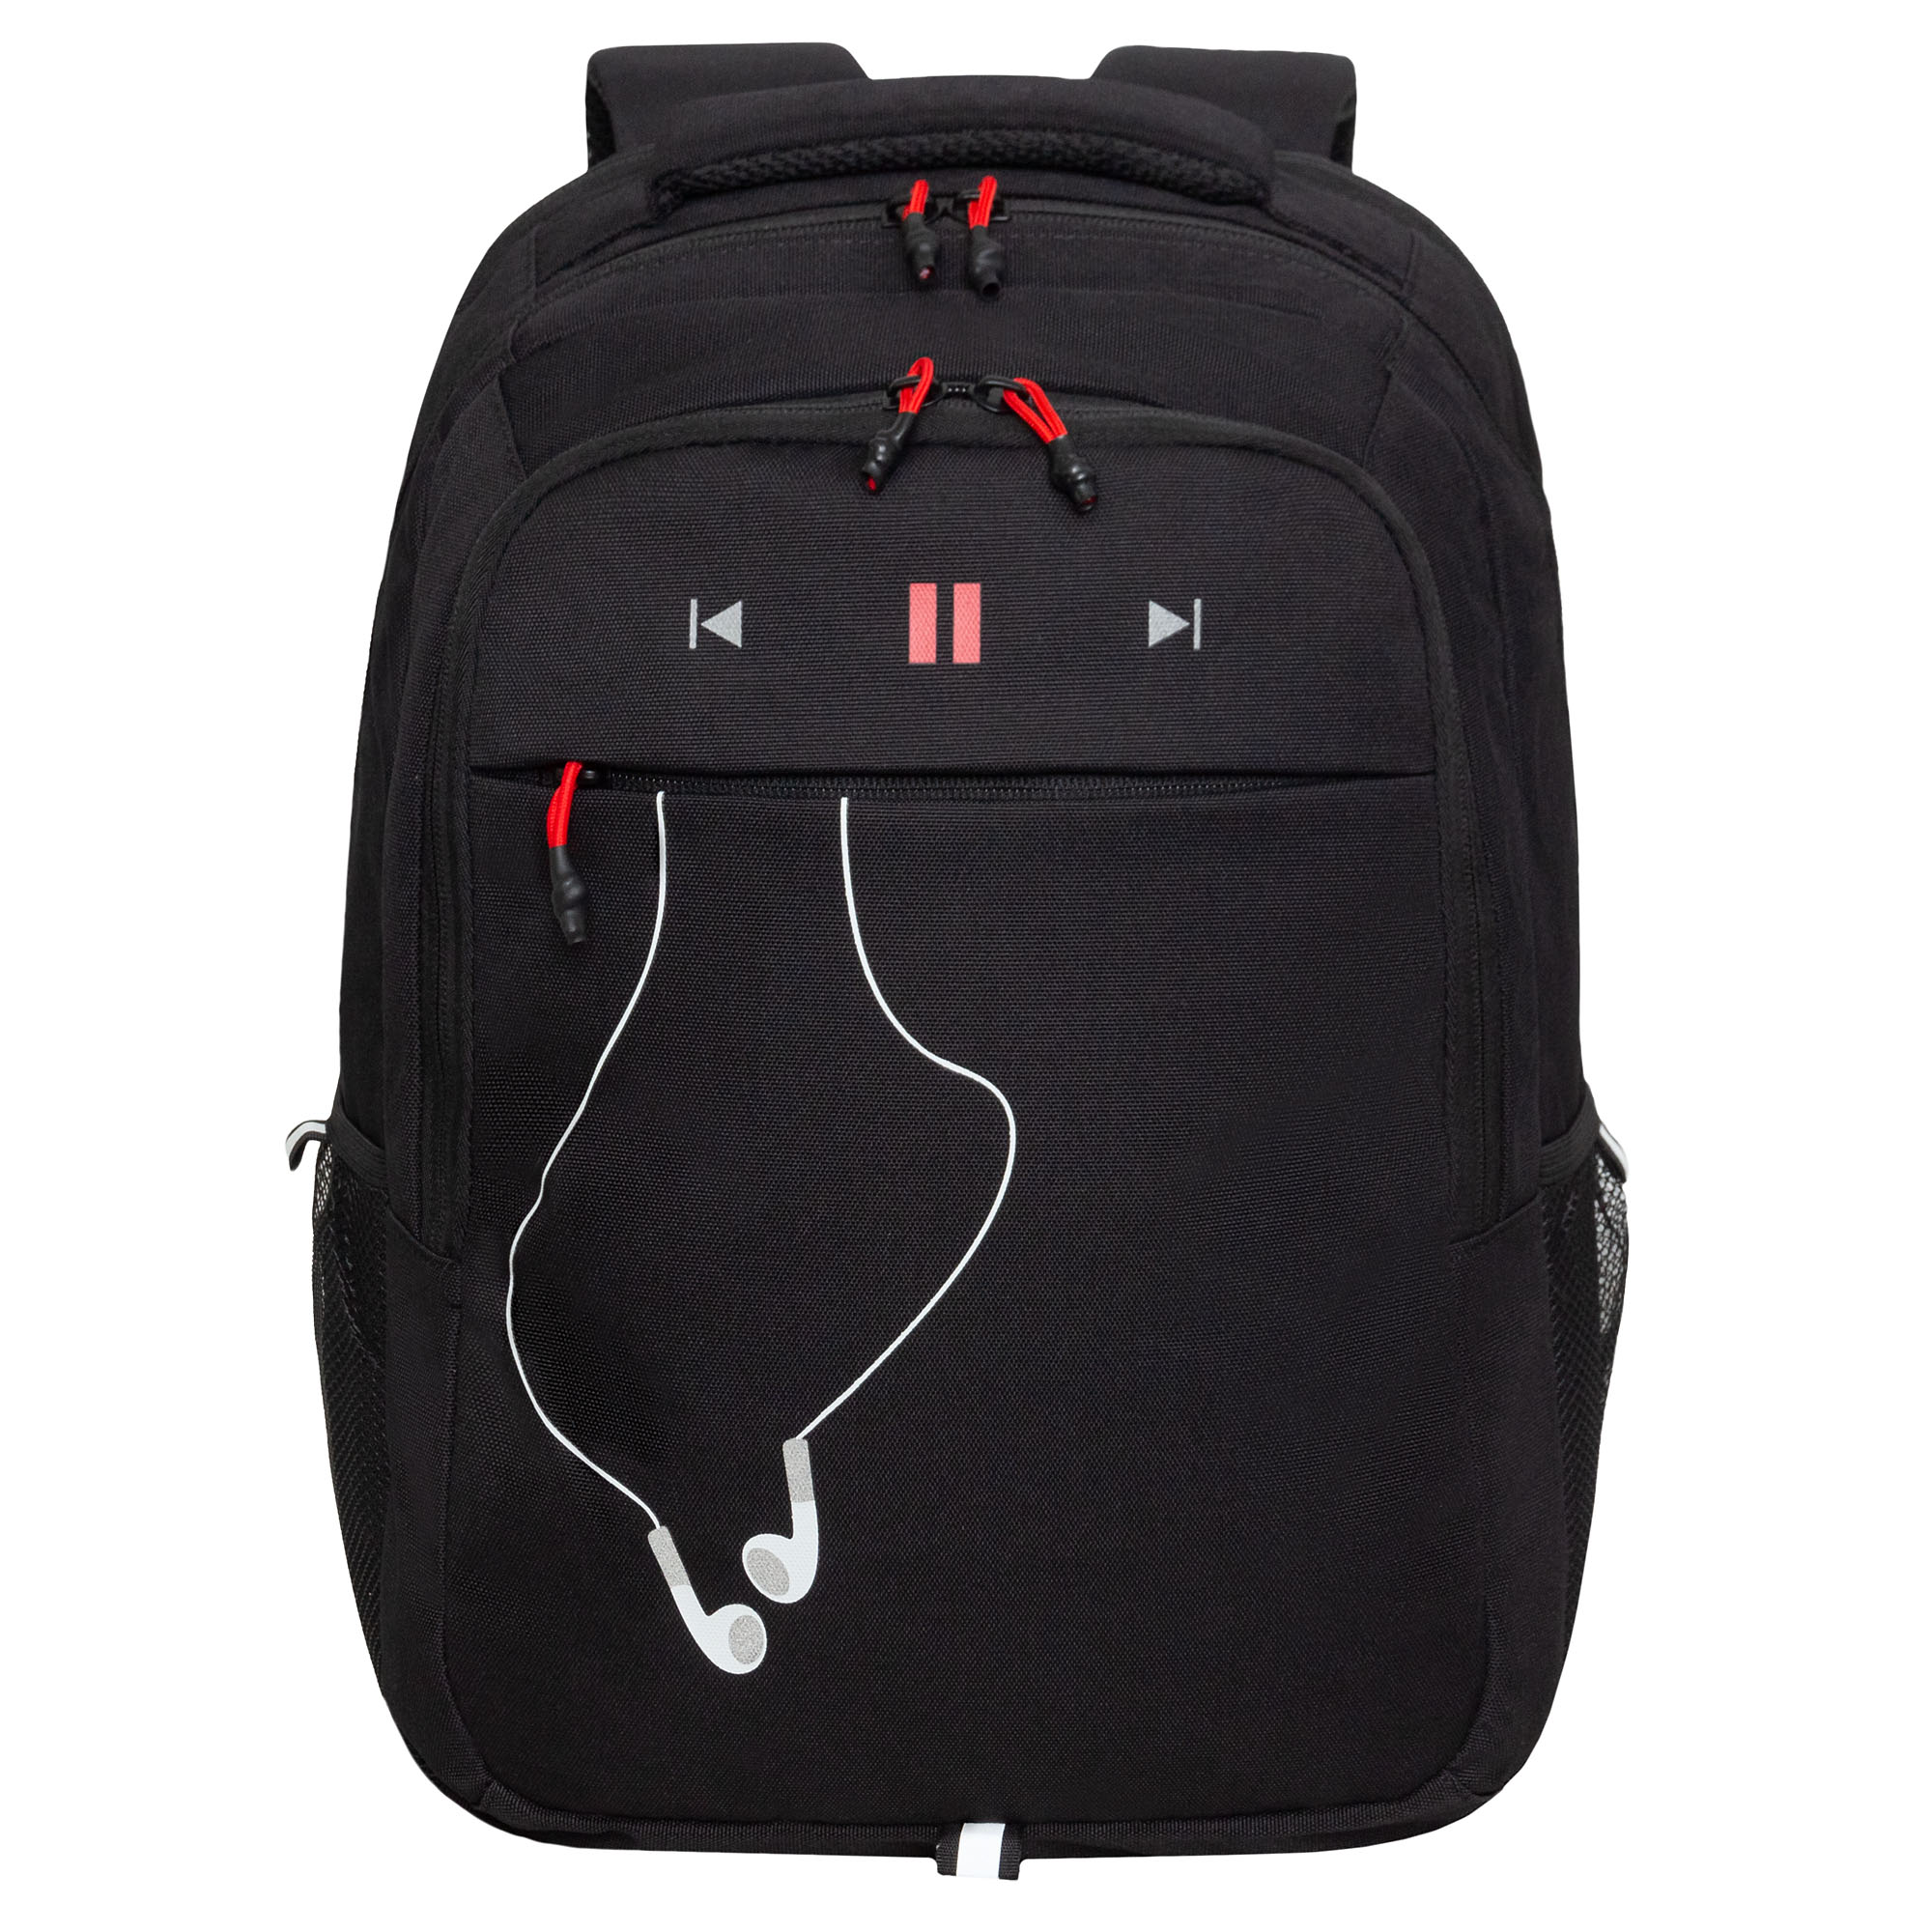 Рюкзак молодежный Grizzly с карманом для ноутбука 15, RU-432-4/2, черный, красный рюкзак для ноутбука 15 6 portcase kbp 132gr